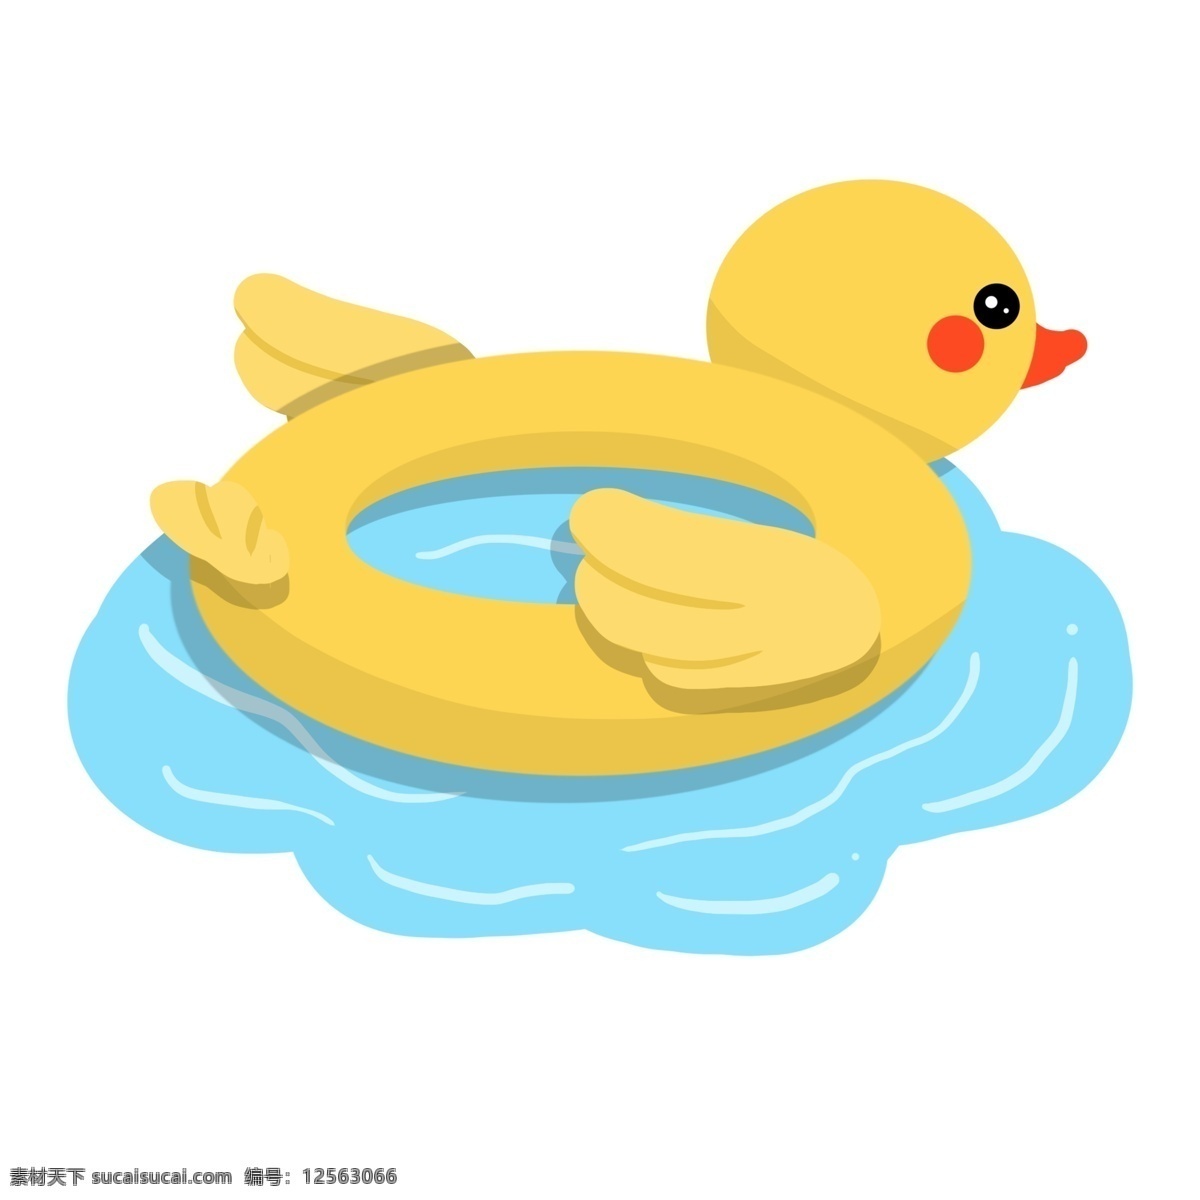 游泳圈救生圈 小黄鸭 卡通的 手绘